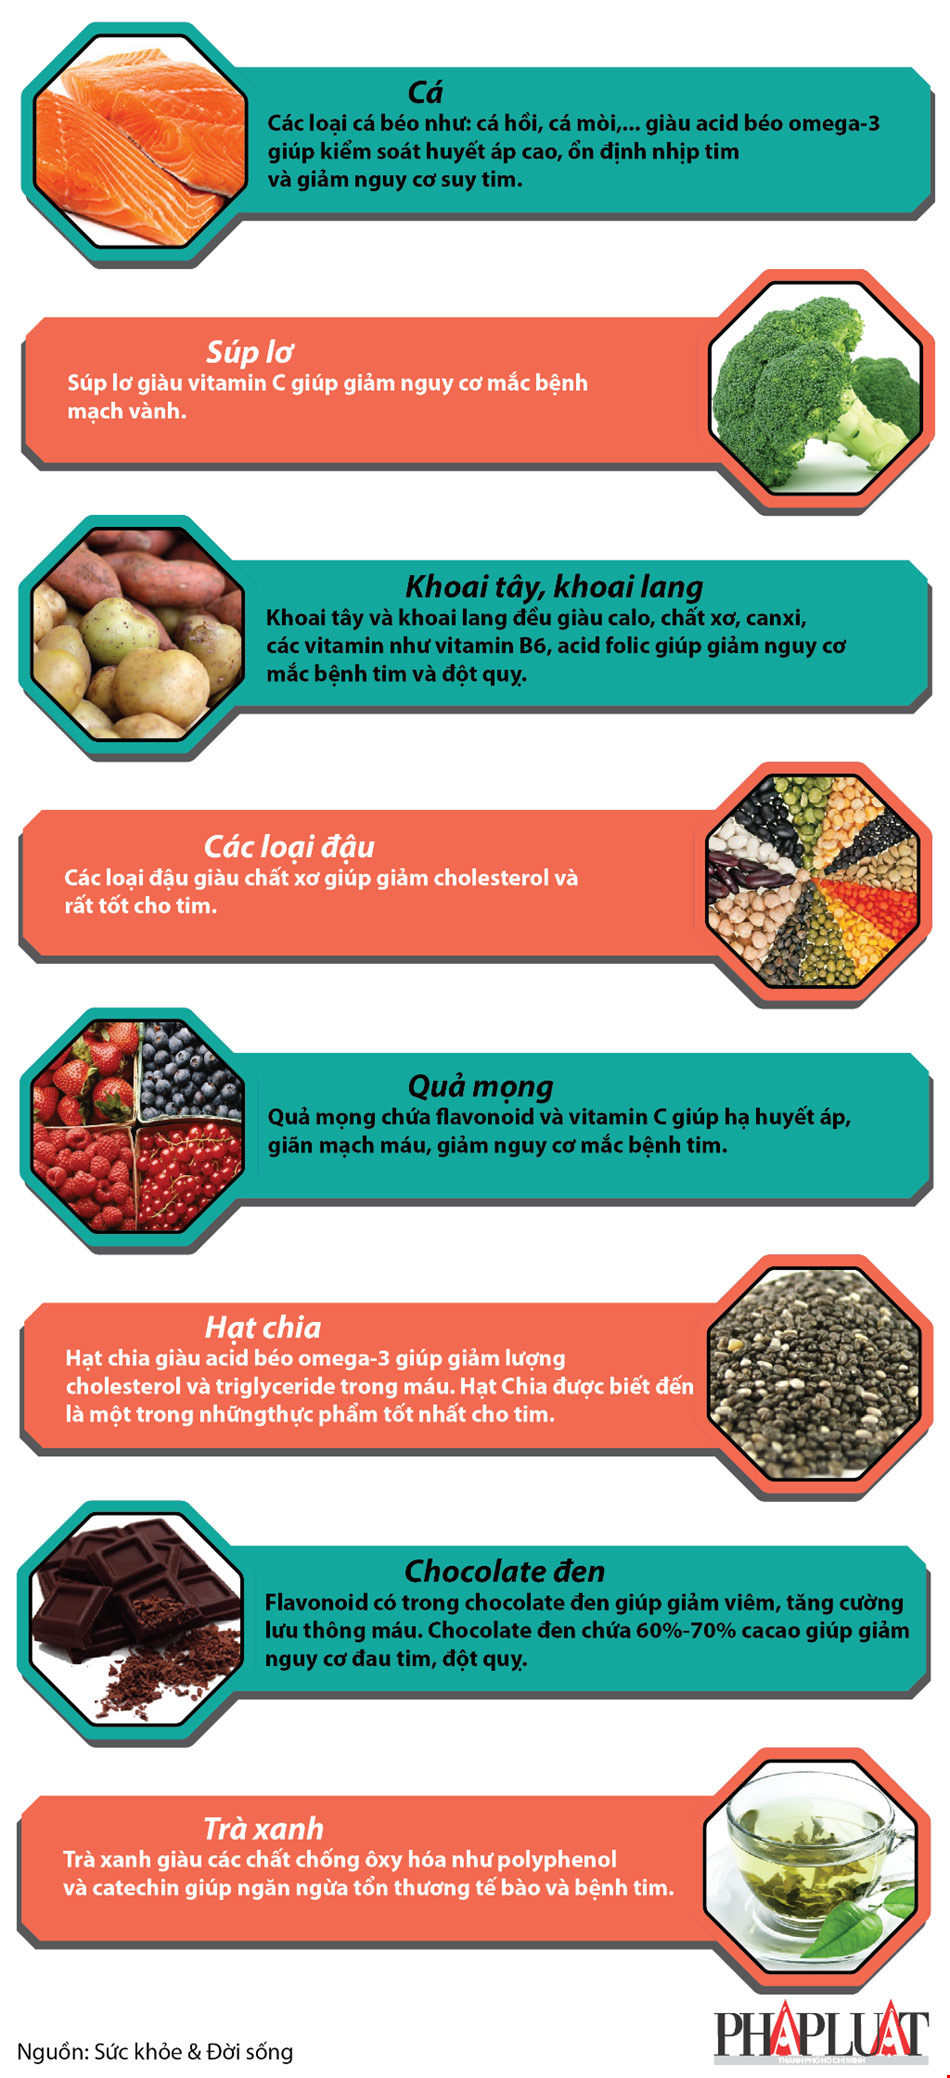 Infographic: 8 thực phẩm giúp giảm nguy cơ mắc bệnh tim - 1